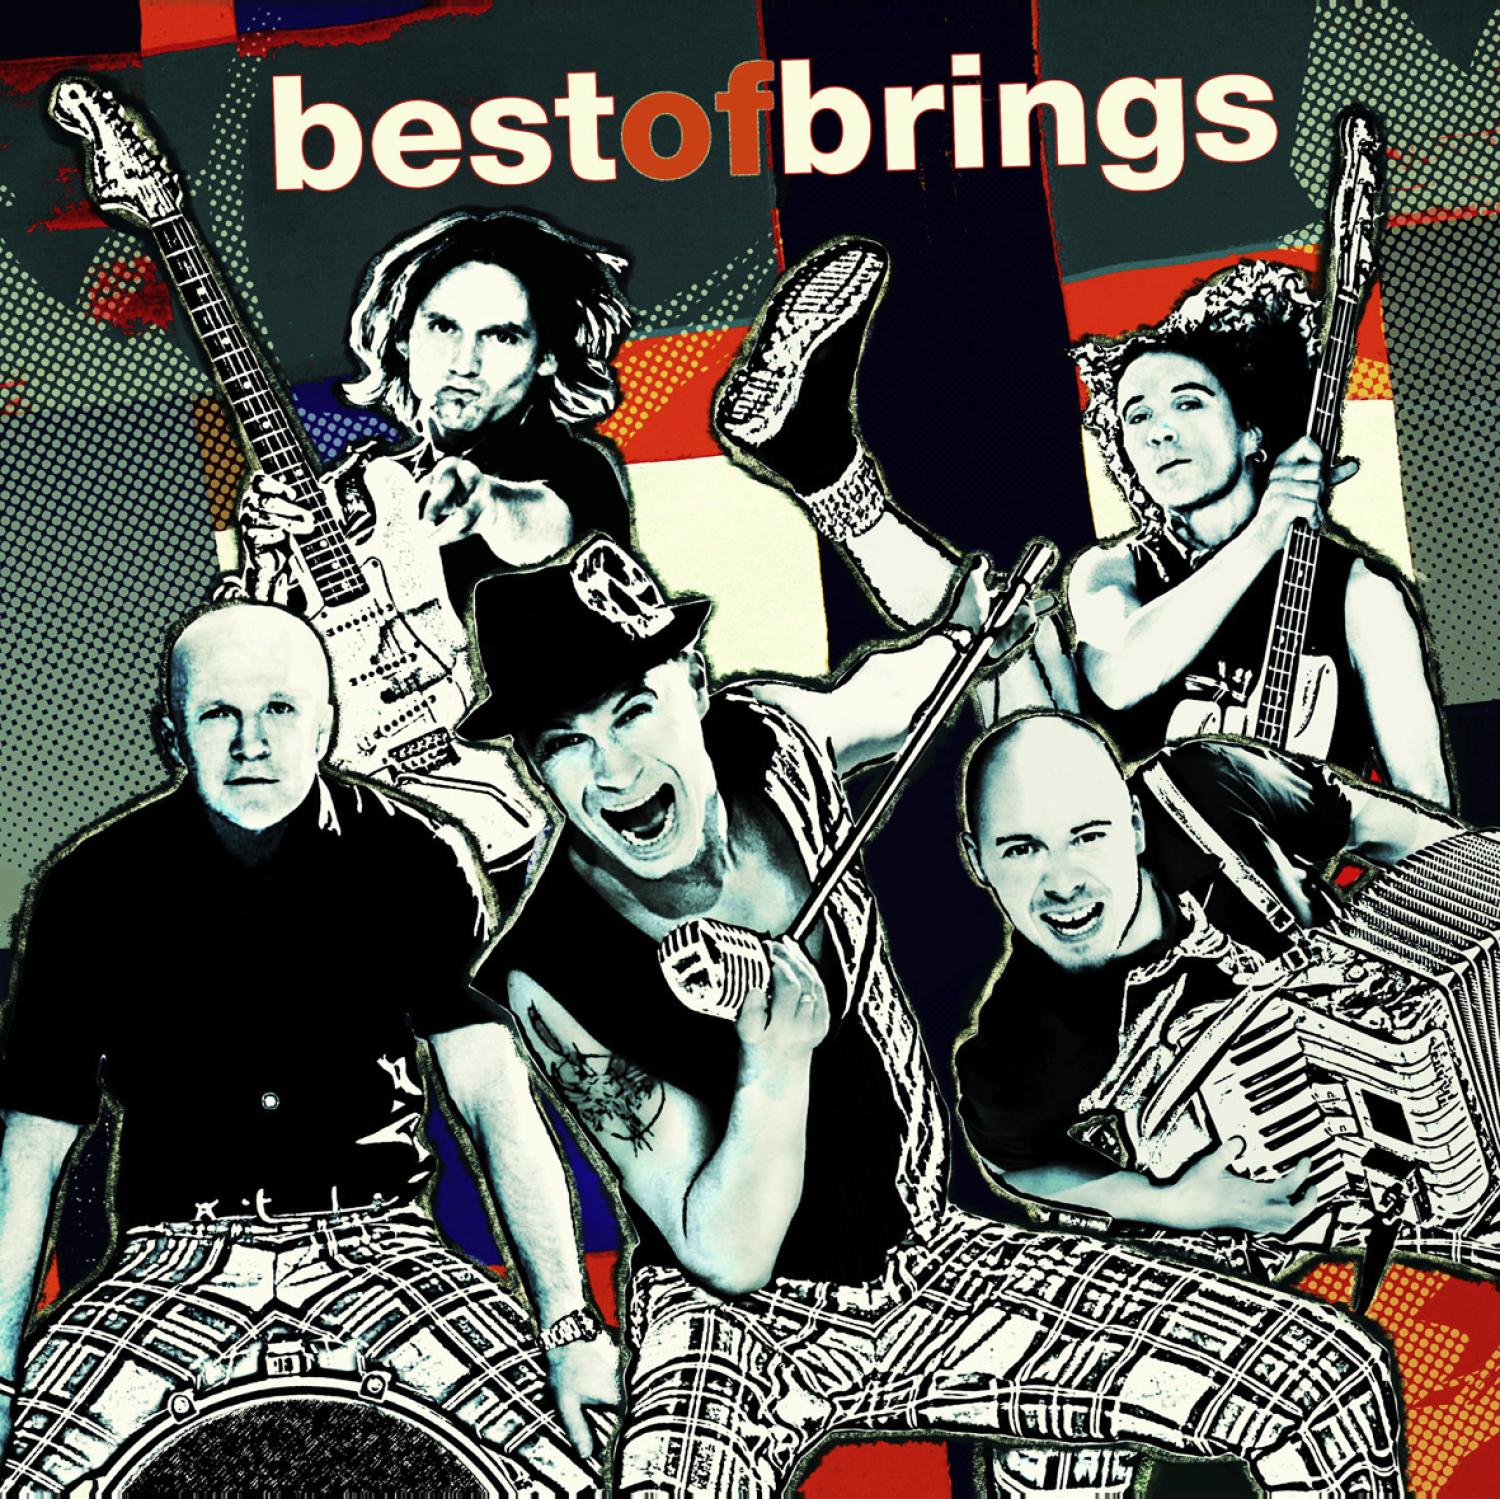 Brings - - Of Best (CD)